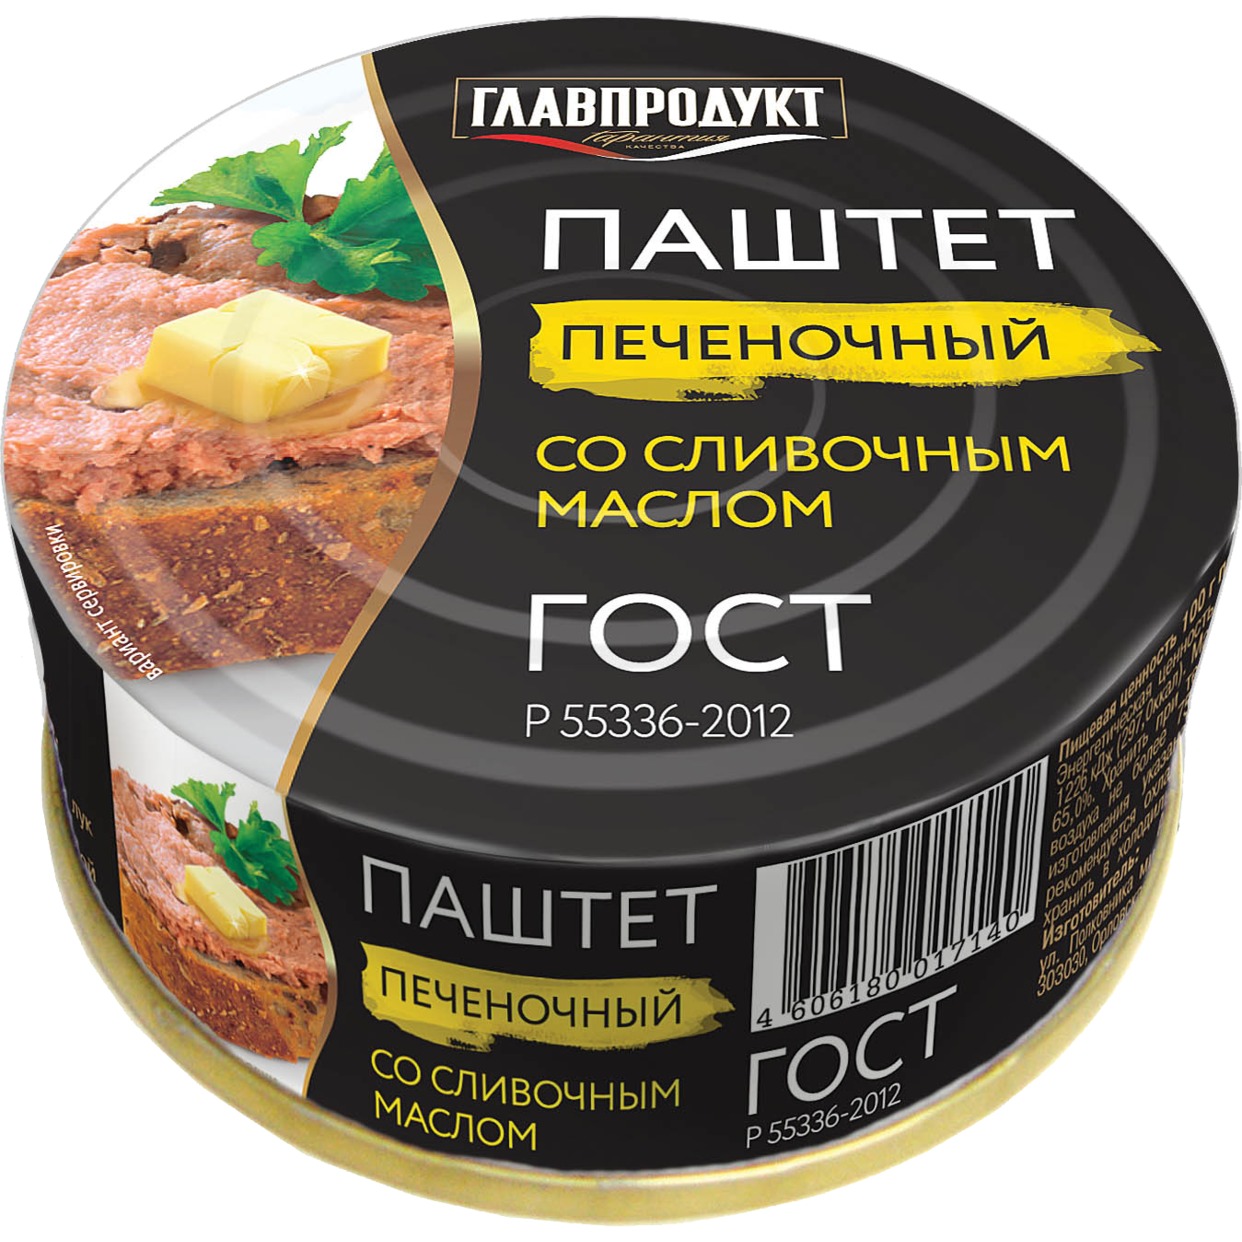 Паштет печеночный, со сливочным маслом, Главпродукт, 100 г по акции в Пятерочке